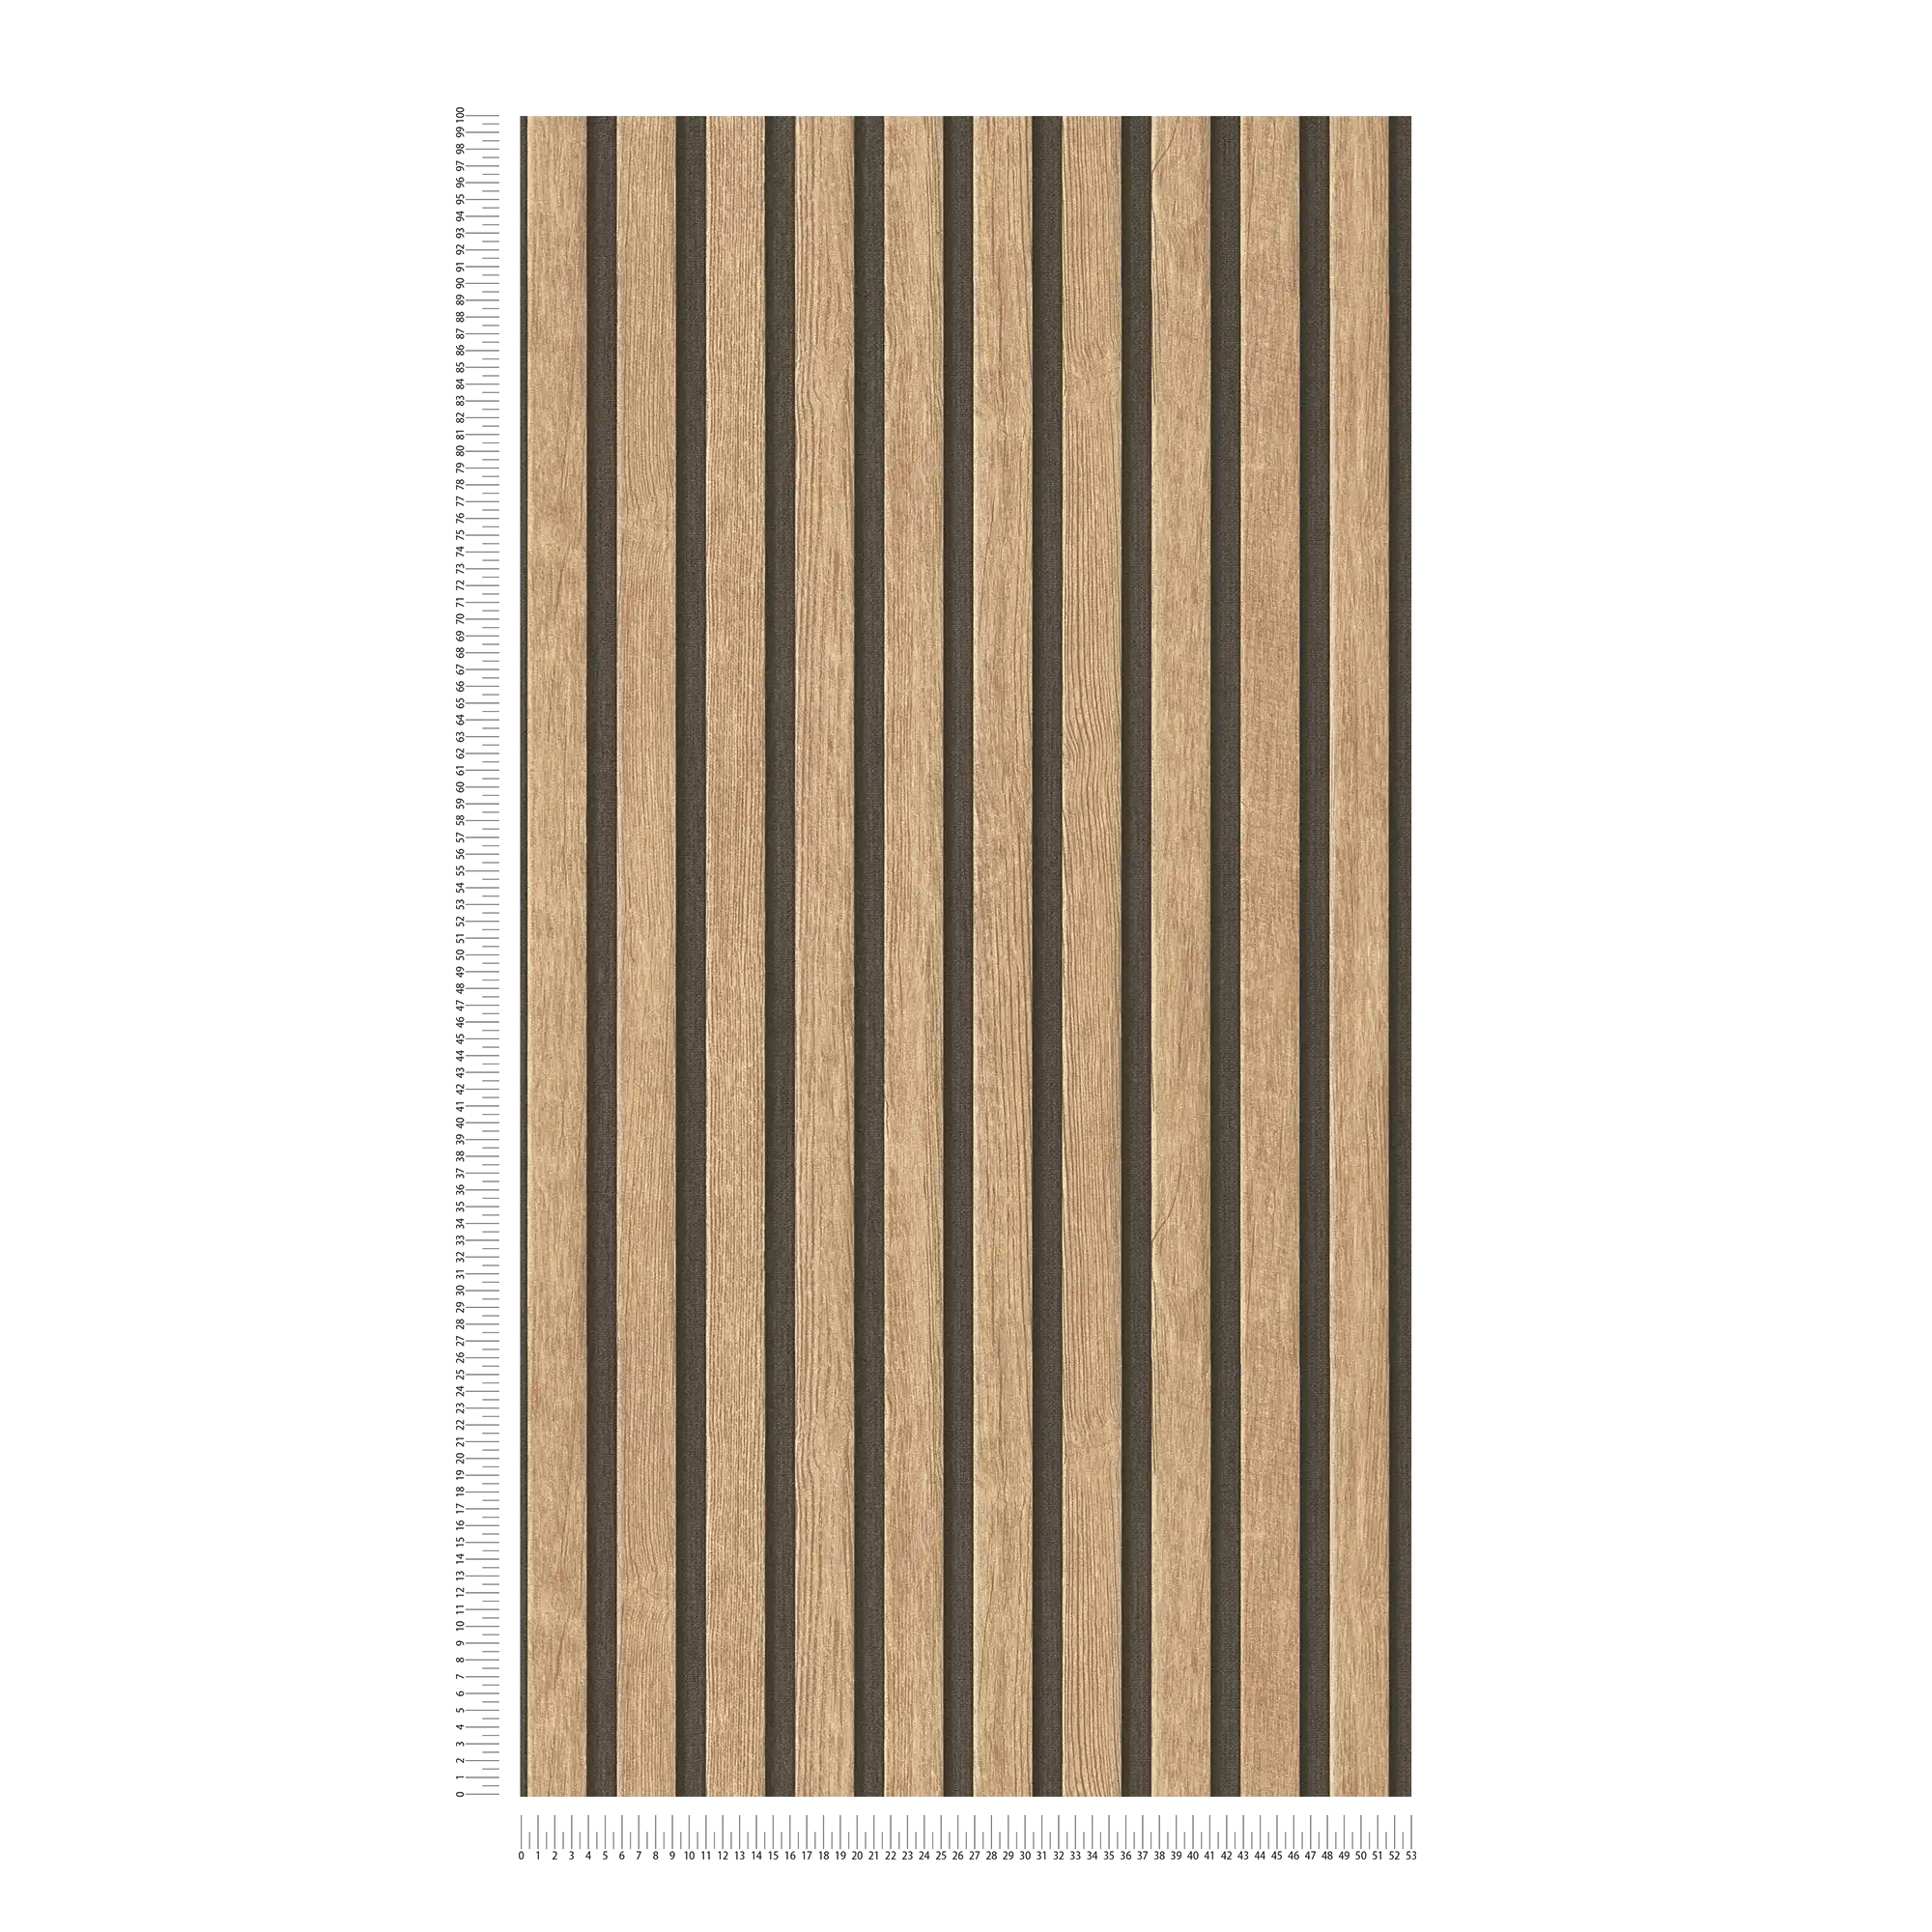             behang houtlook met paneelpatroon - beige, bruin
        